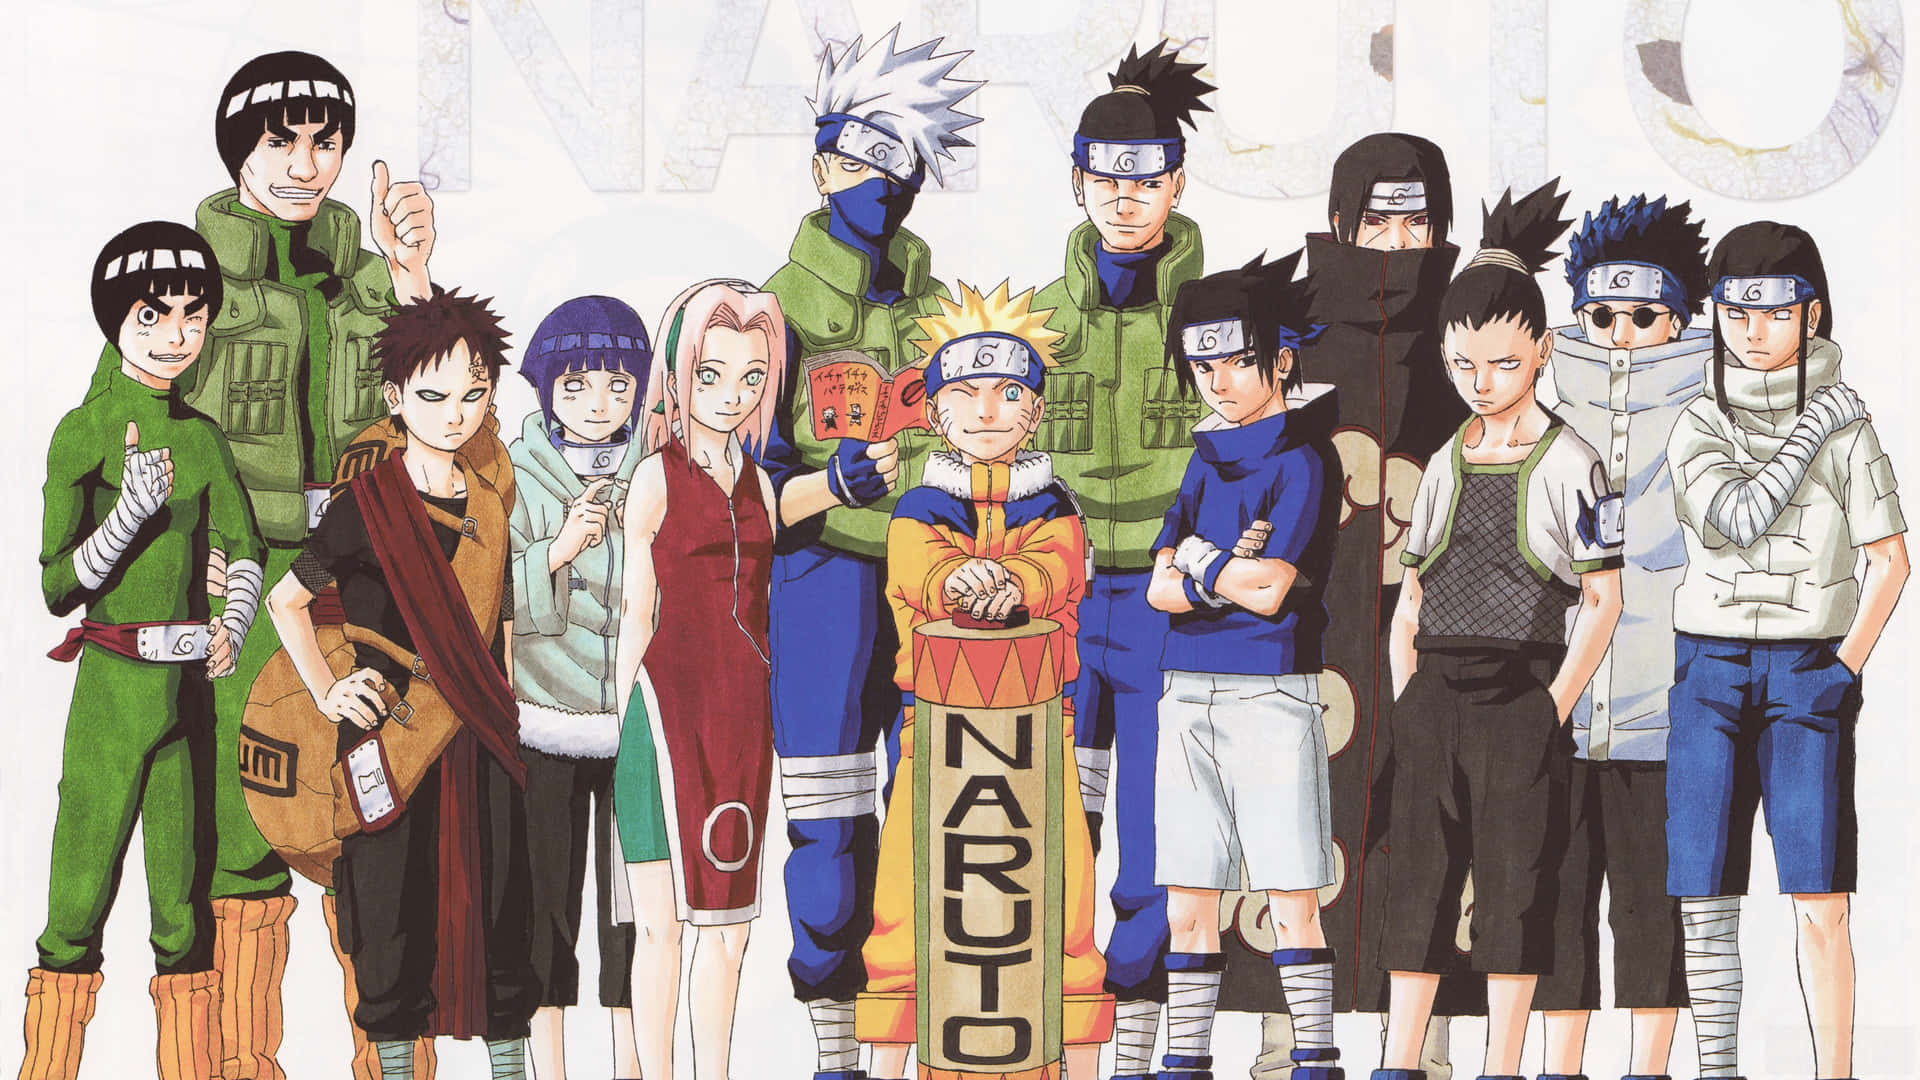 Gaaraund Naruto Sind Charaktere Aus Dem Anime. Wallpaper